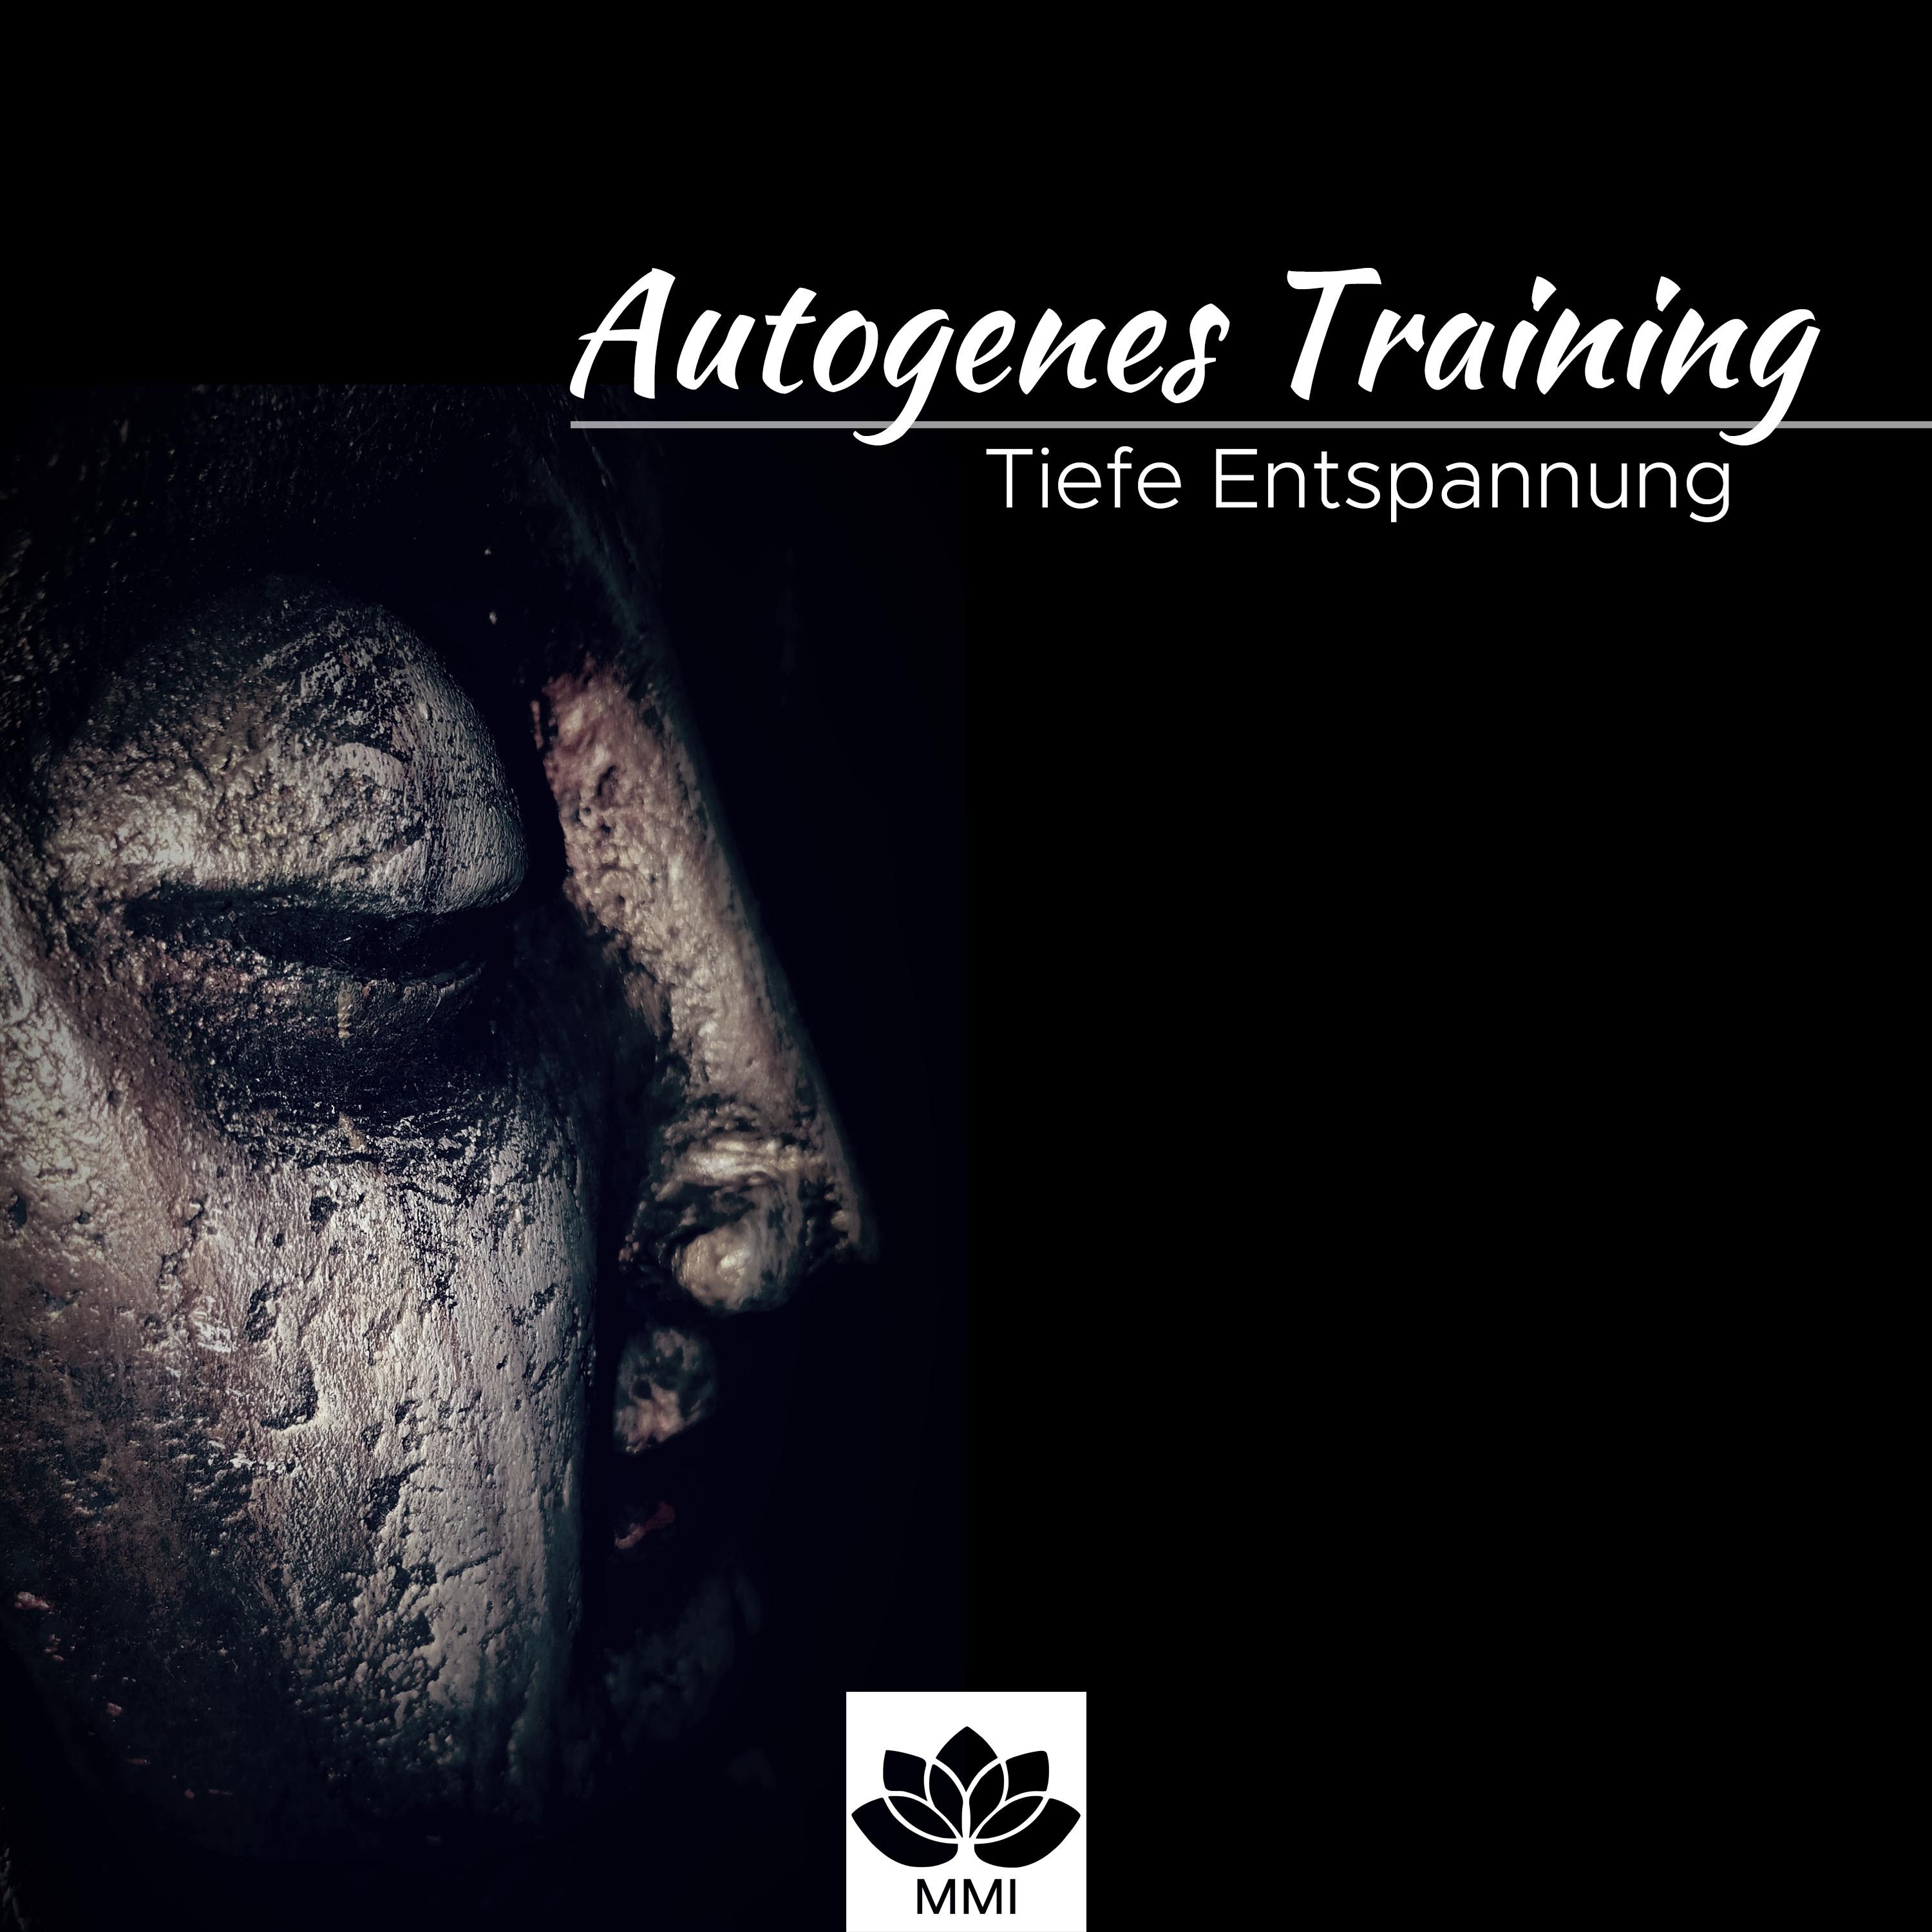 Autogenes Training: Tiefe Entspannung, Reduktion der Stimulation, Passive Konzentration, Selbstregulierung